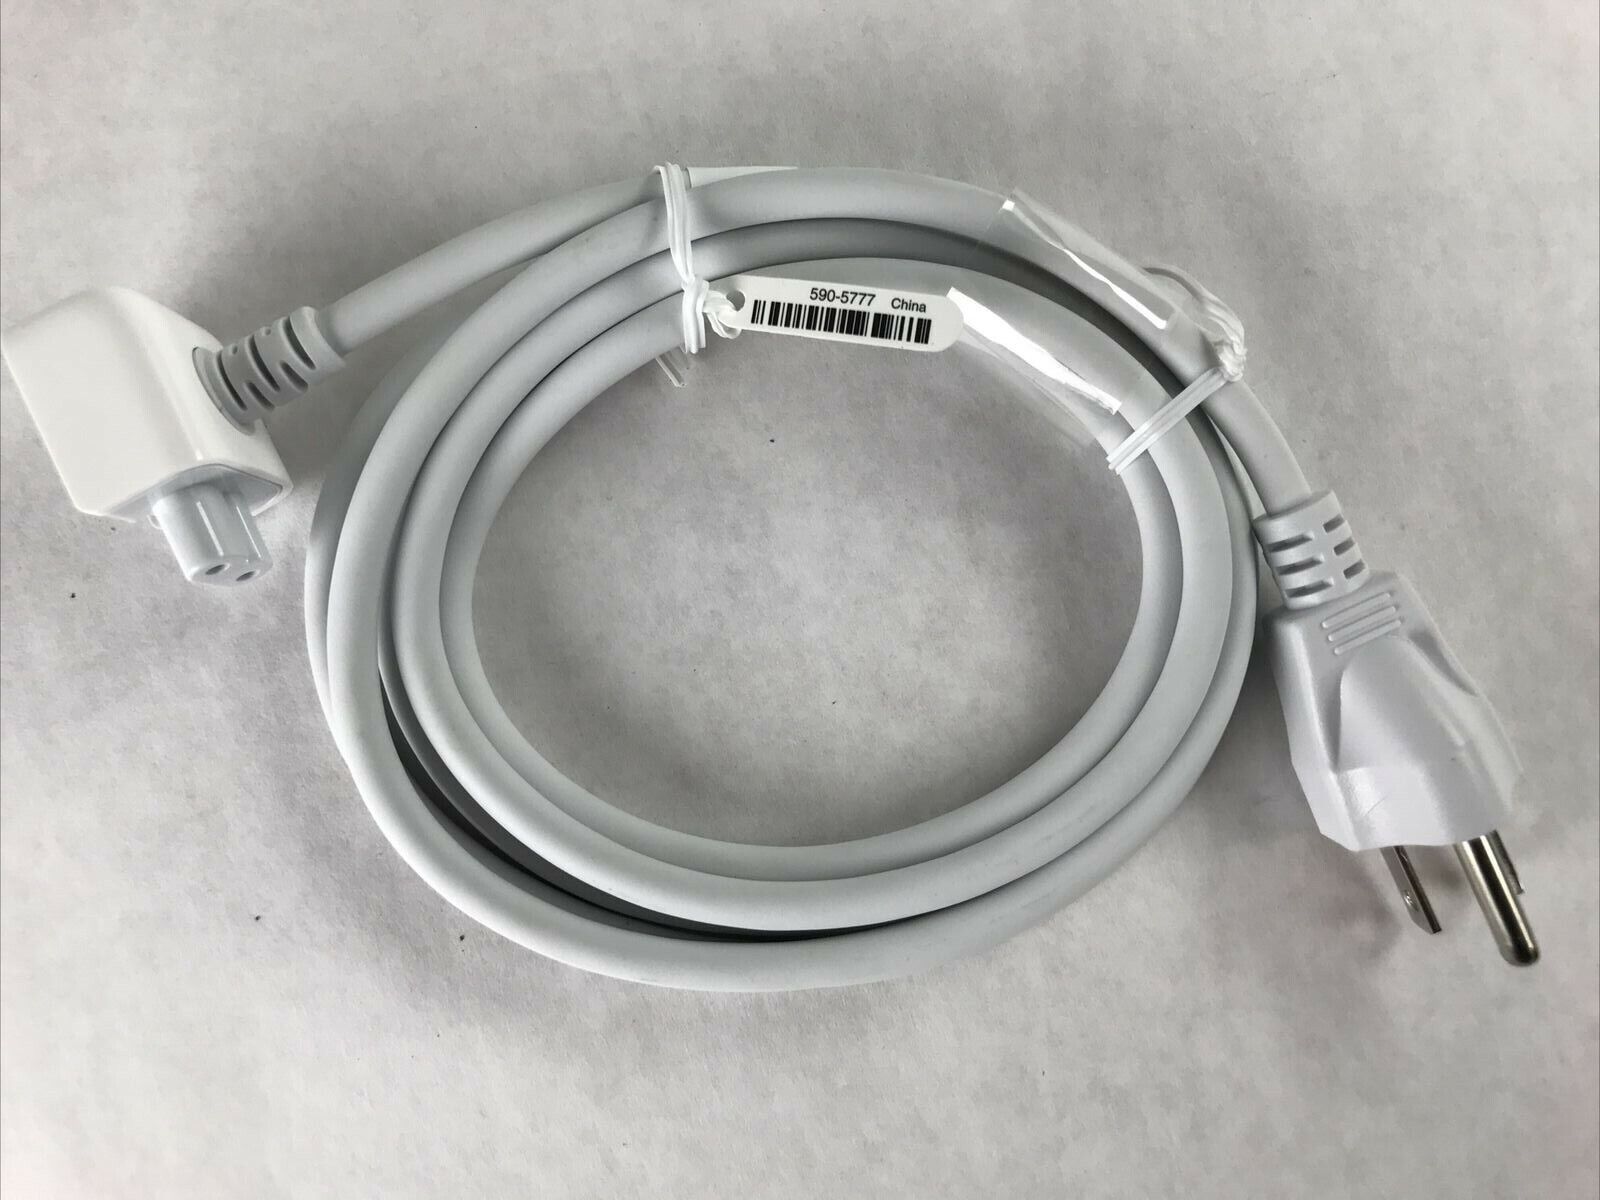 Apple Macbook Power Adapter Cord 2.5A 125V APC7Q